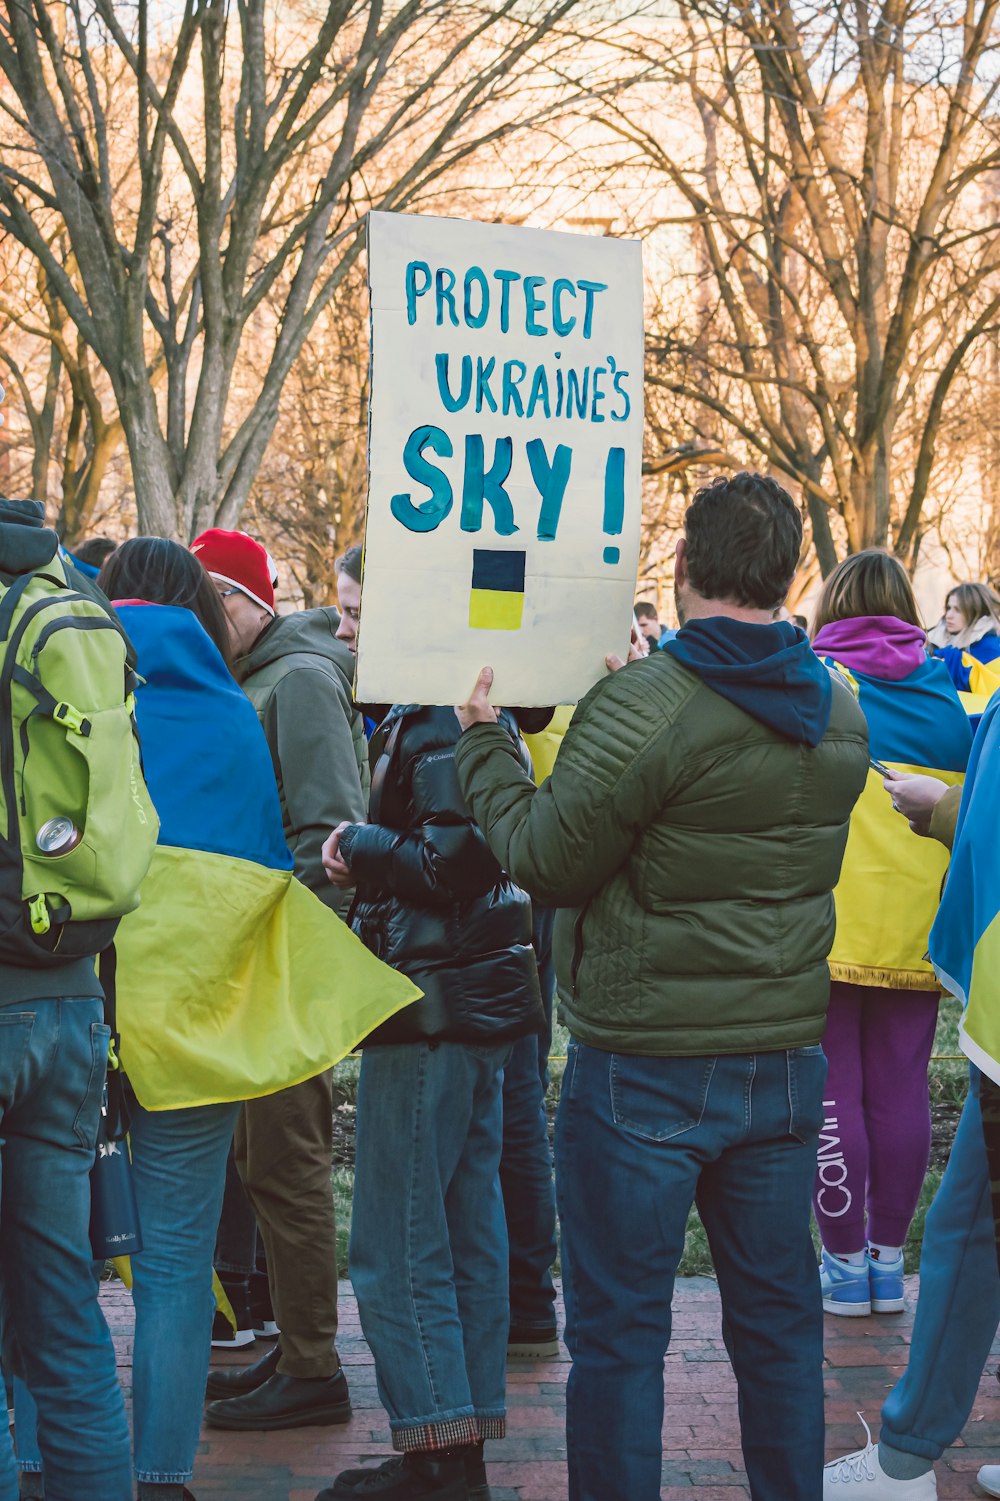 우크라이나의 하늘을 보호하라는 표지판을 들고 있는 한 무리의 사람들